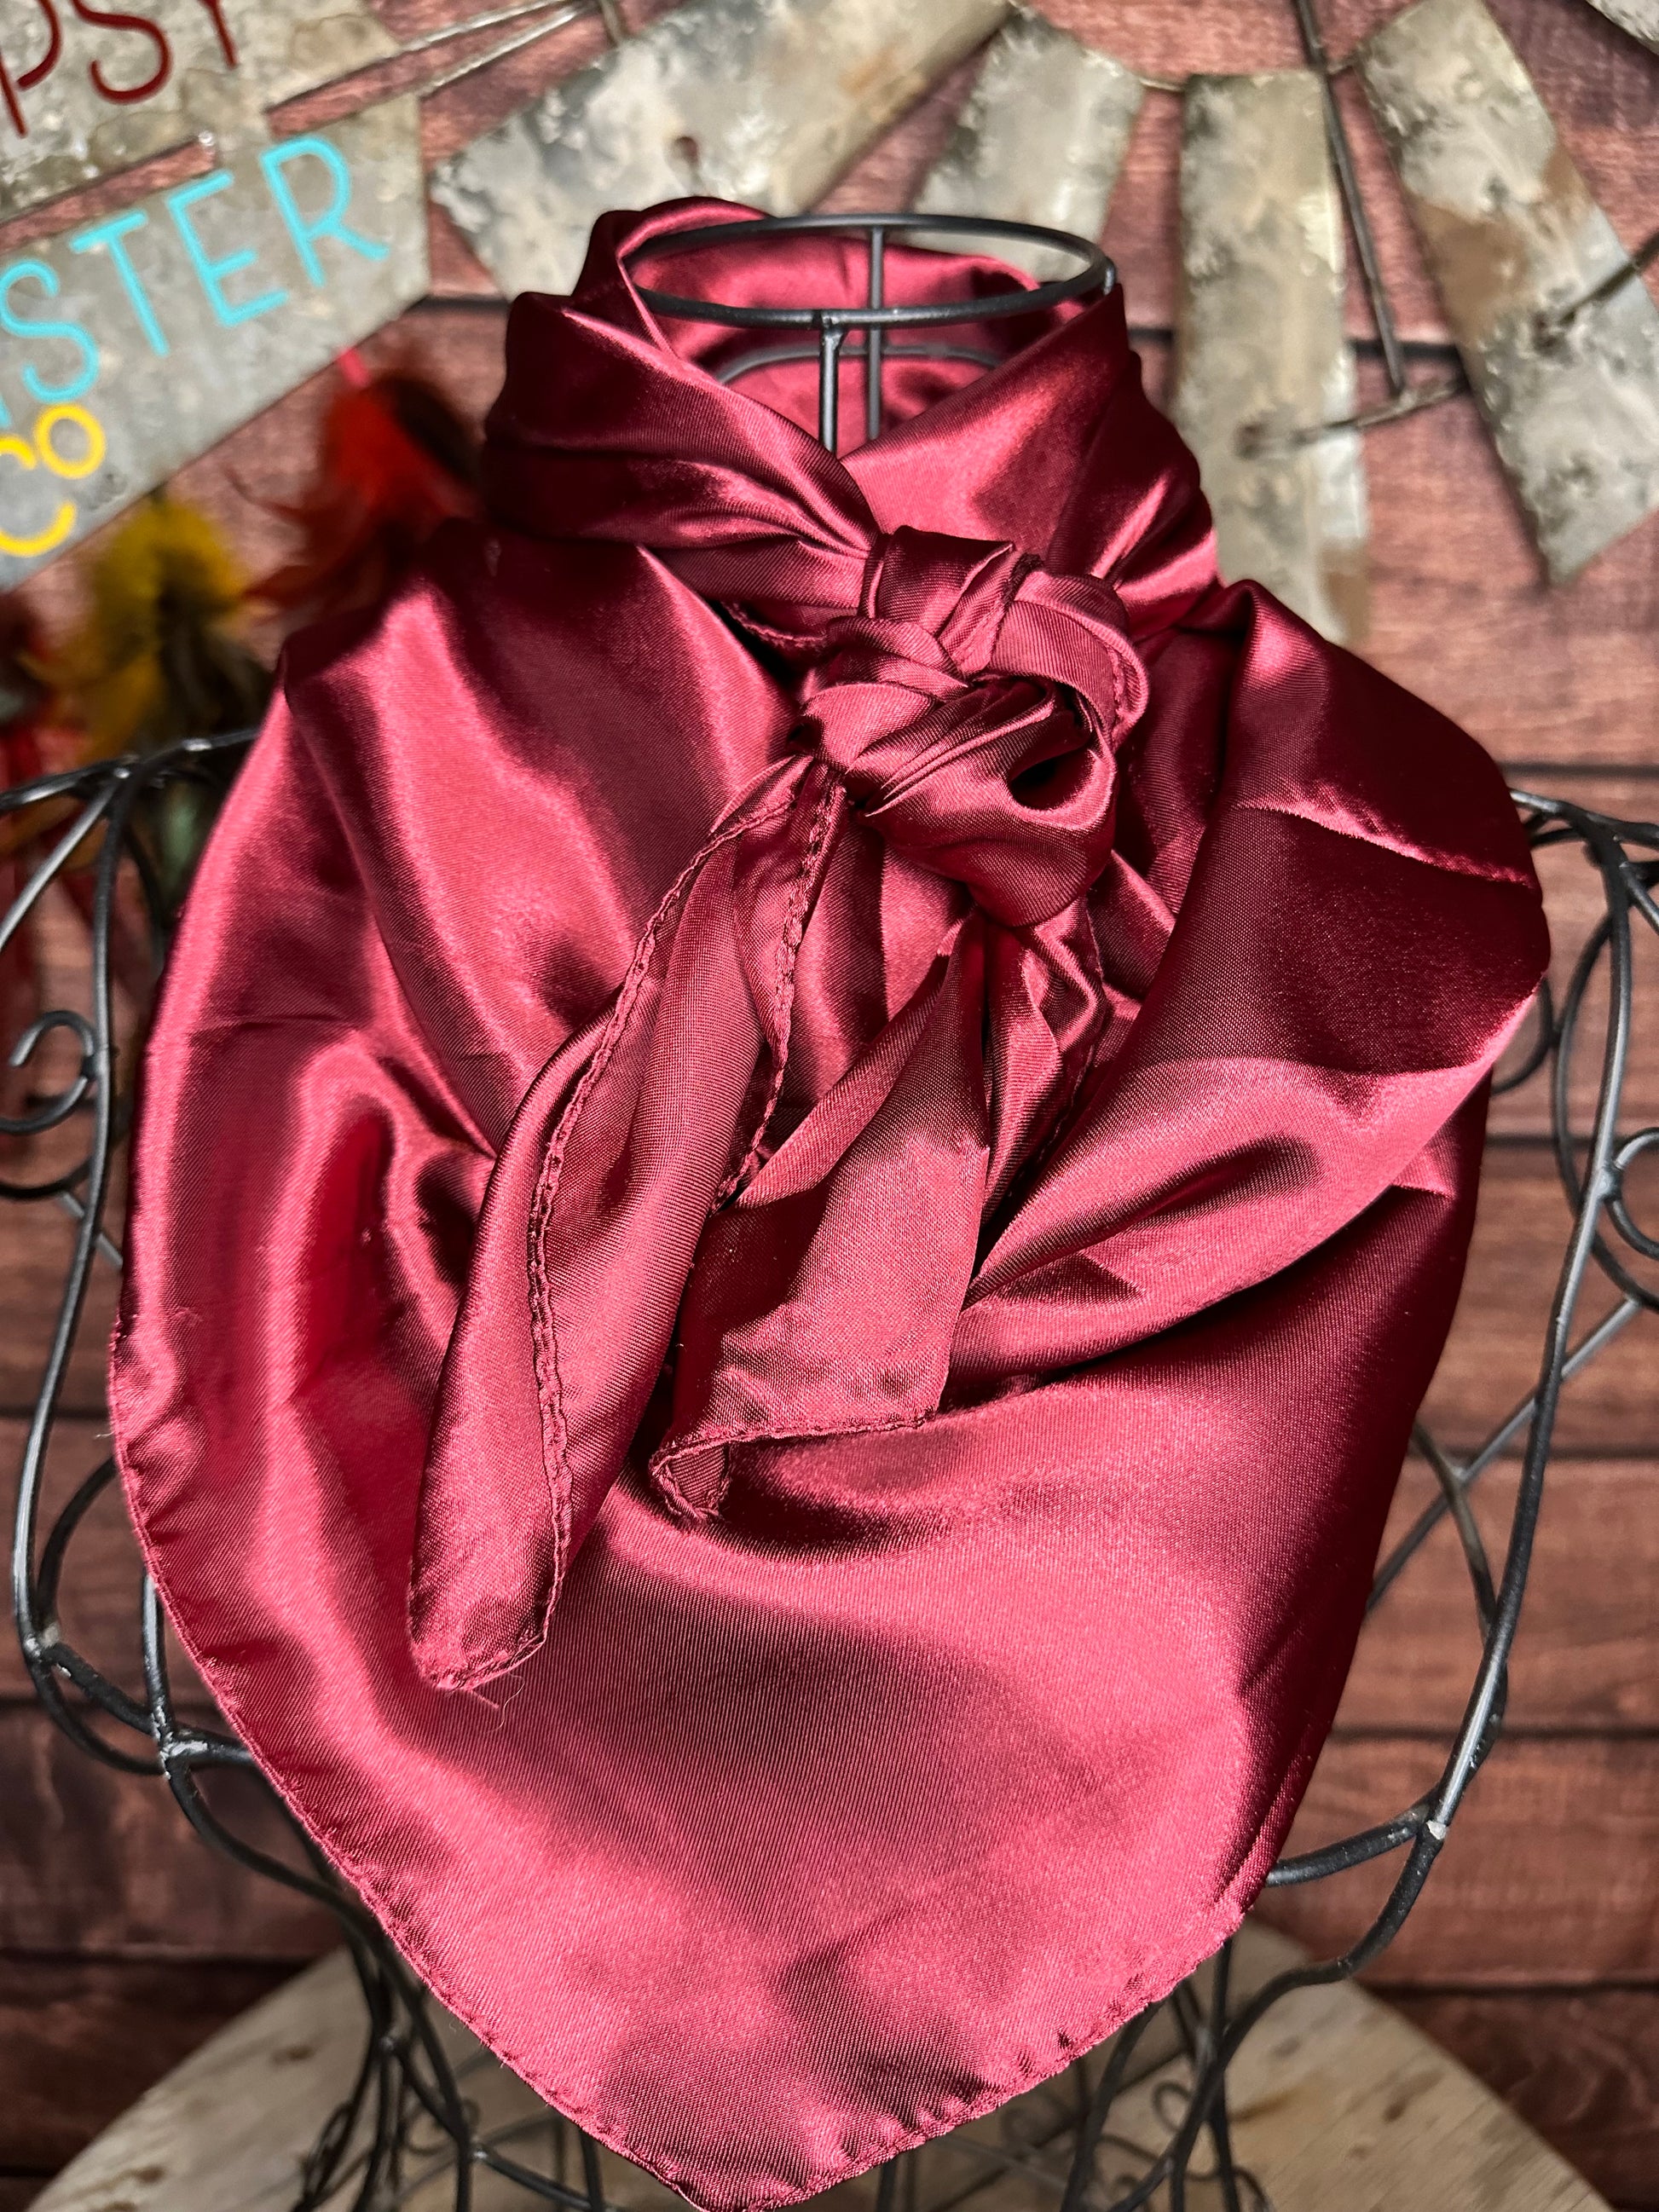 Burgundy silky wild rag tied on a mannequin 